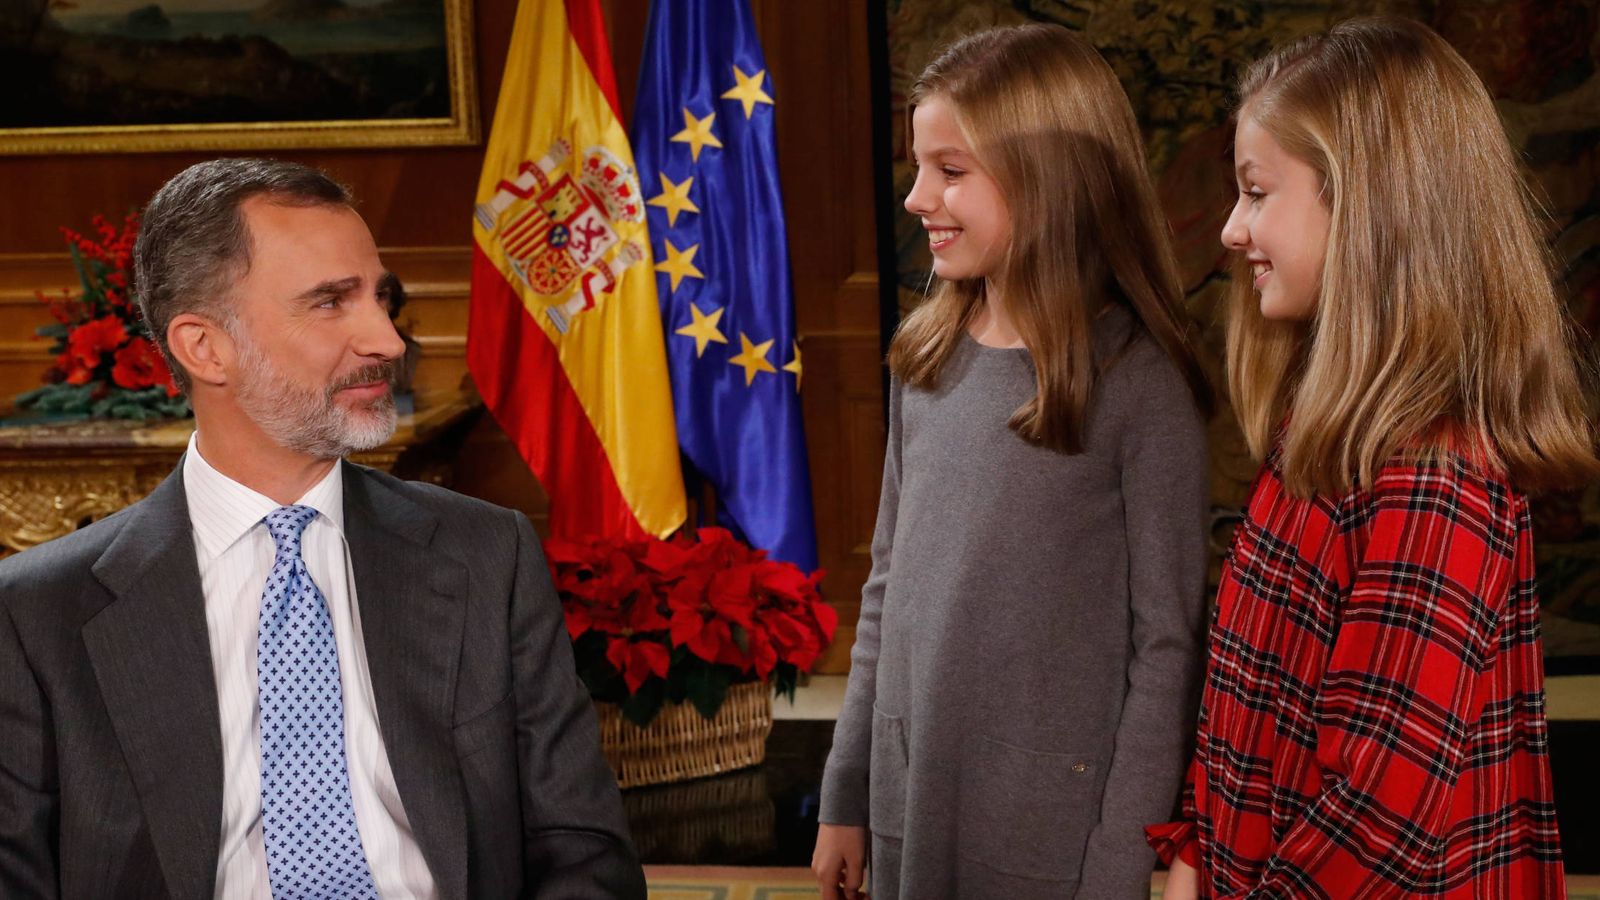 Foto: El Rey mira orgulloso a sus dos hijas. (Casa Real)